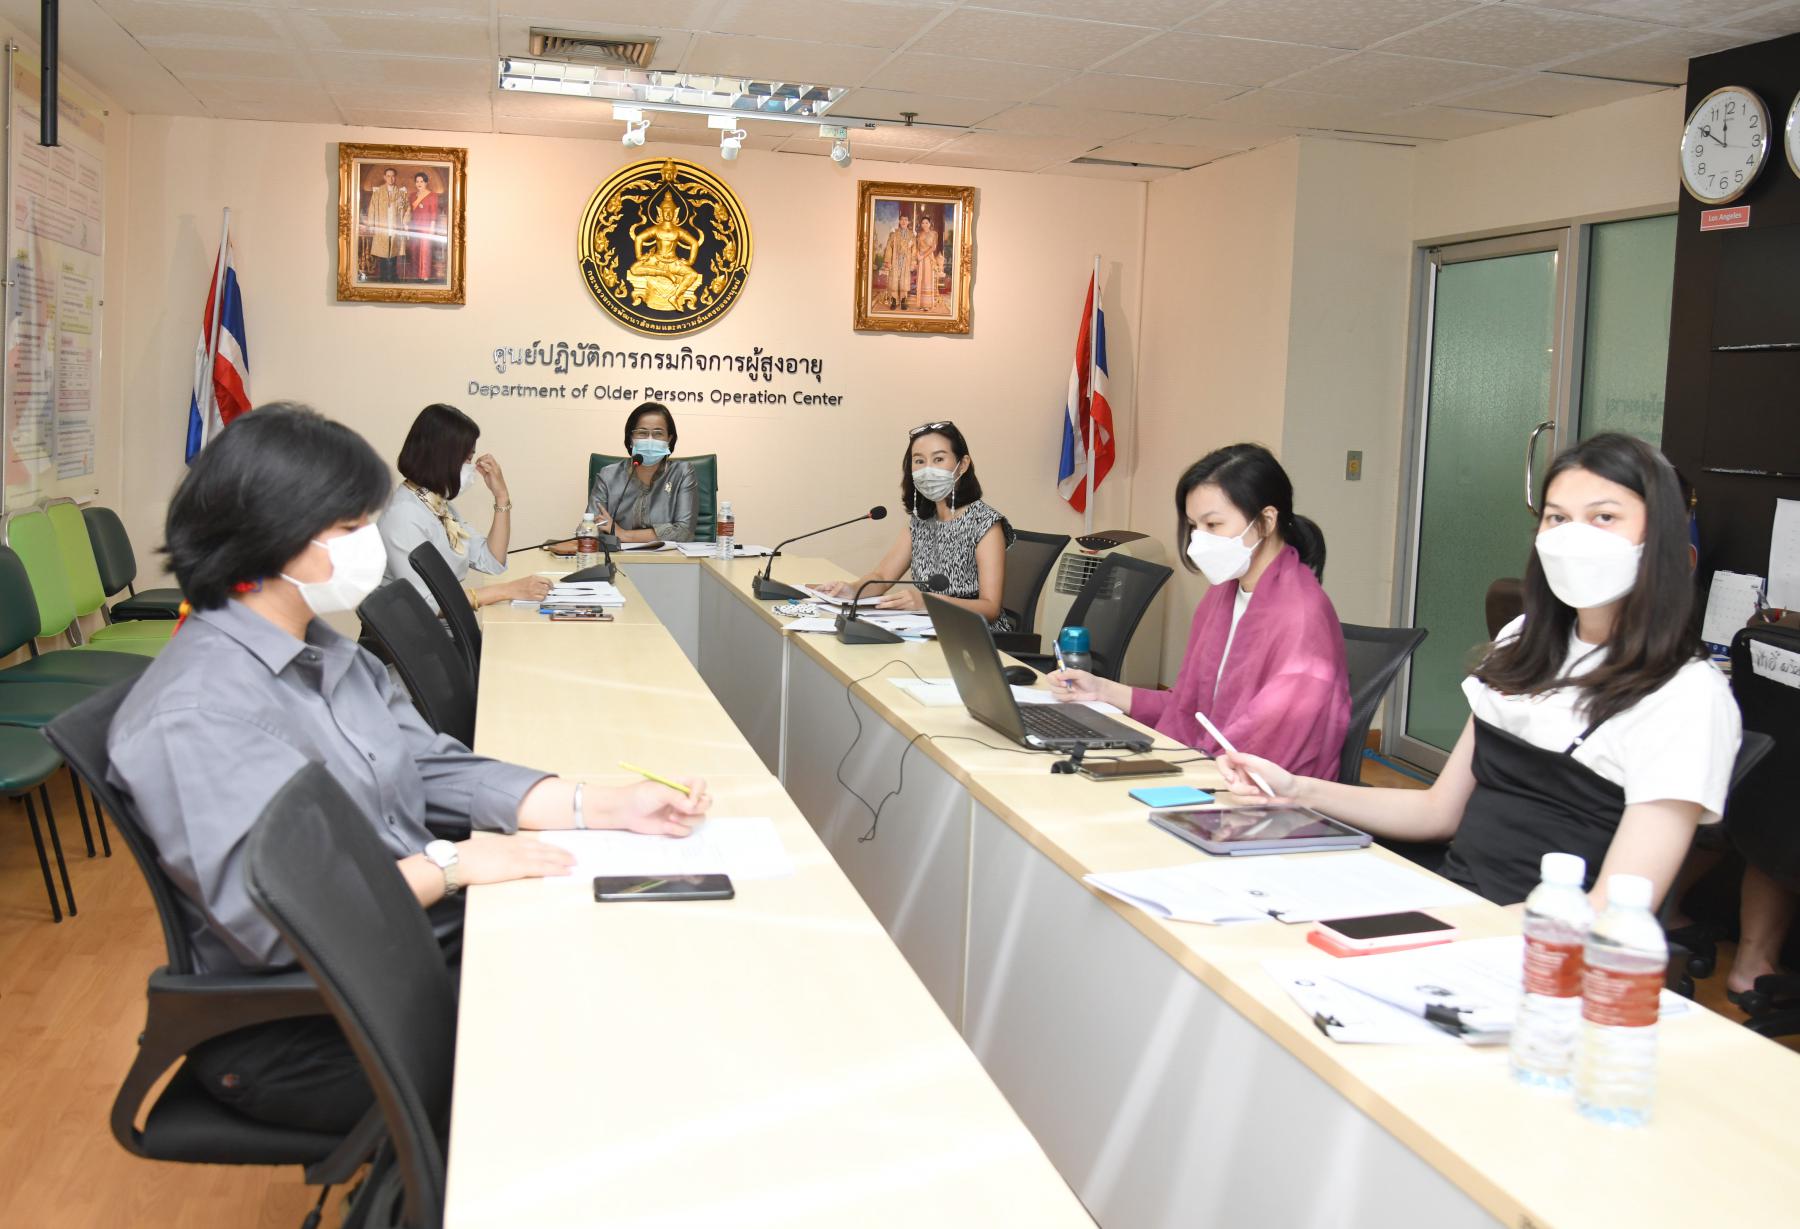 ประชุมคณะกรรมการคัดเลือกโรงเรียนผู้สูงอายุต้นแบบ กรุงเทพมหานคร ประจำปี 2564